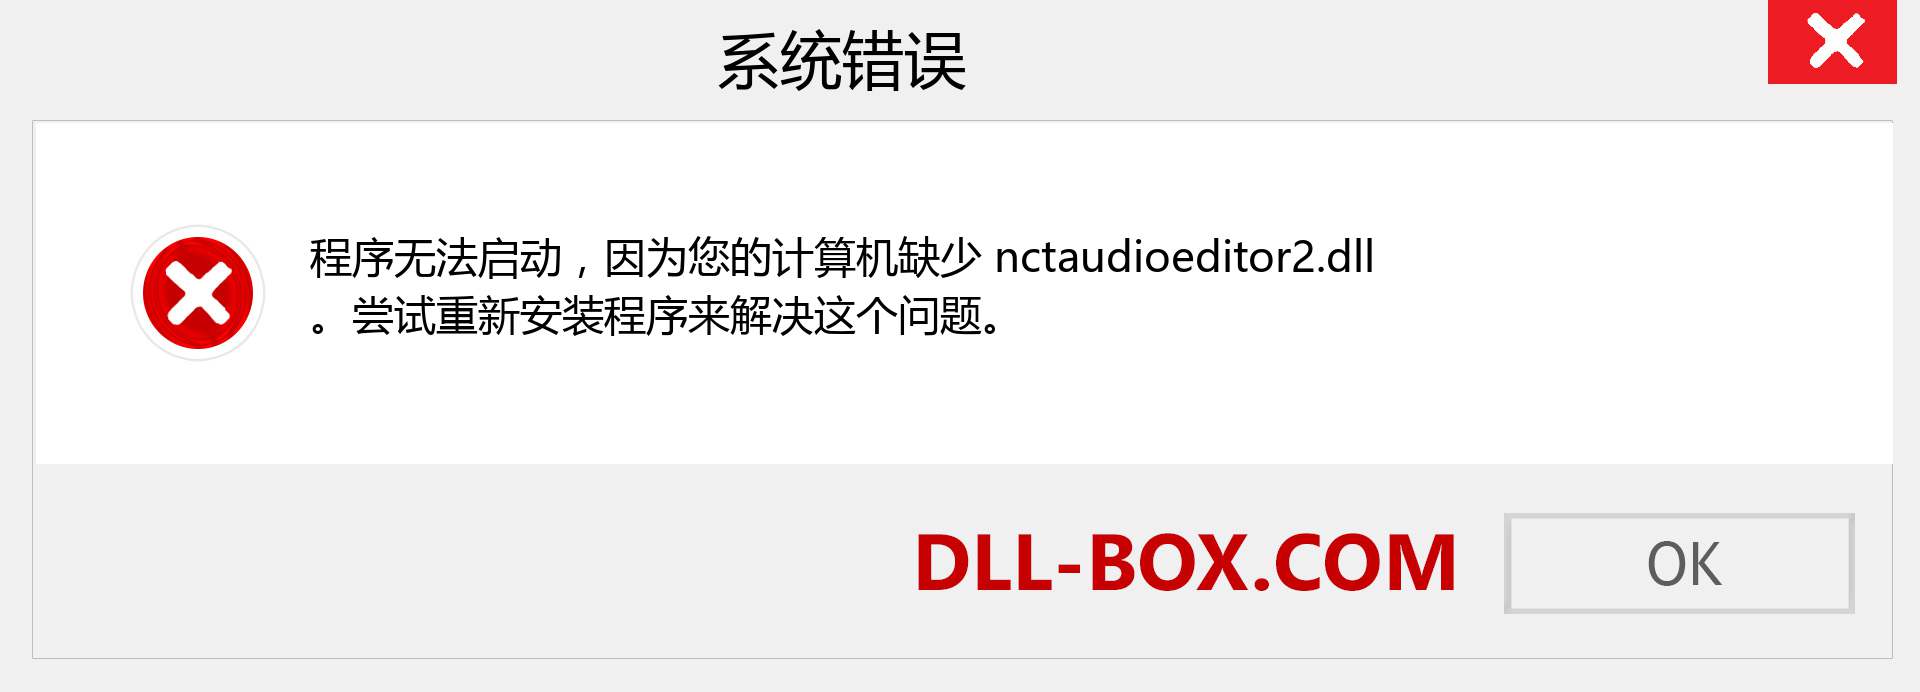 nctaudioeditor2.dll 文件丢失？。 适用于 Windows 7、8、10 的下载 - 修复 Windows、照片、图像上的 nctaudioeditor2 dll 丢失错误